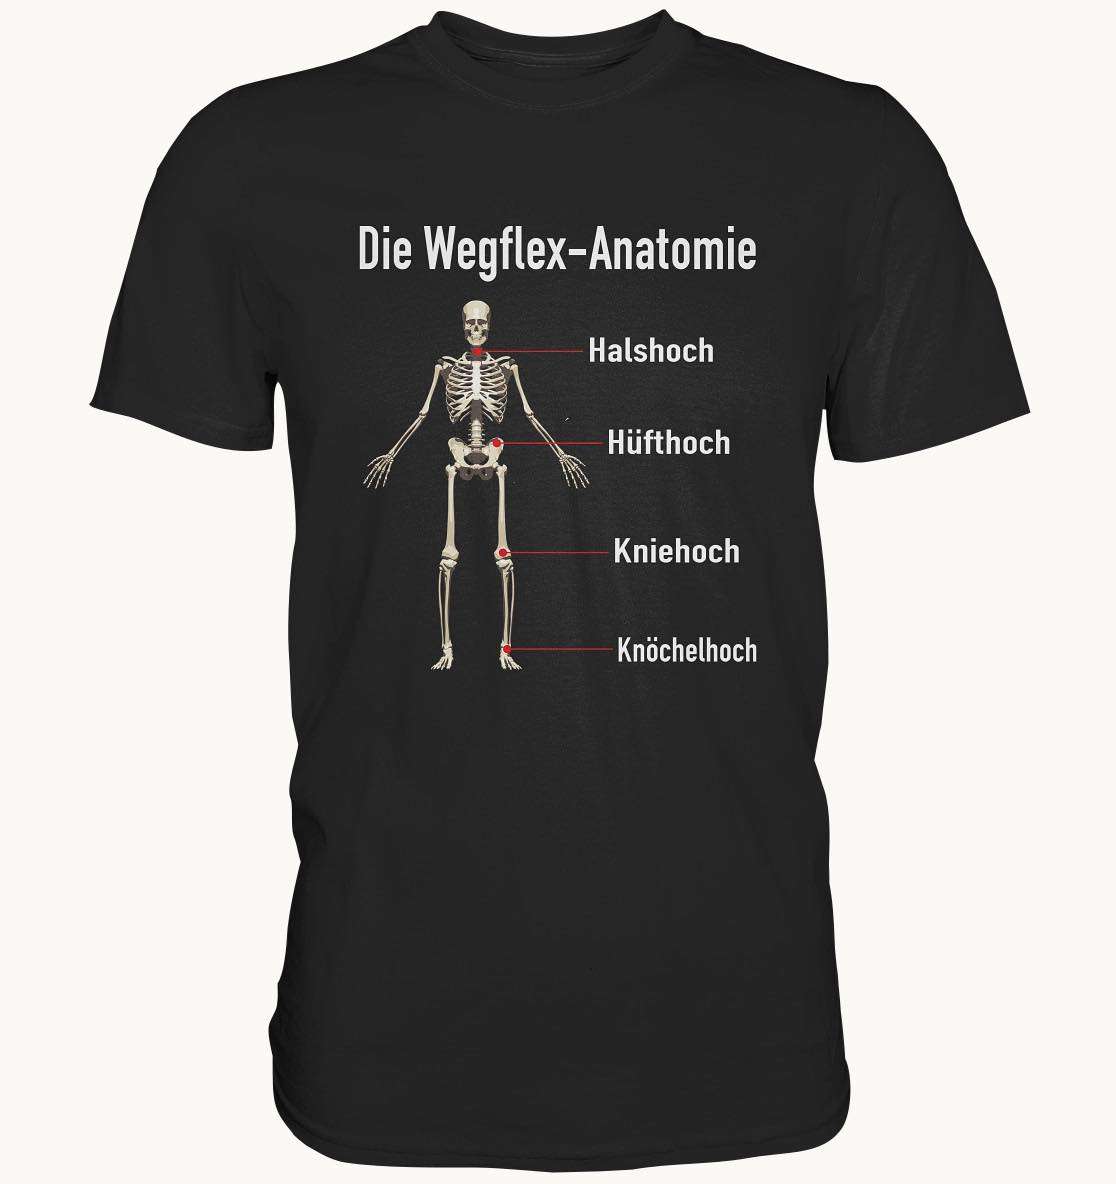 Die weglex-anatomie - Halshoch Hufthoch, Kniehoch Knochelhoch